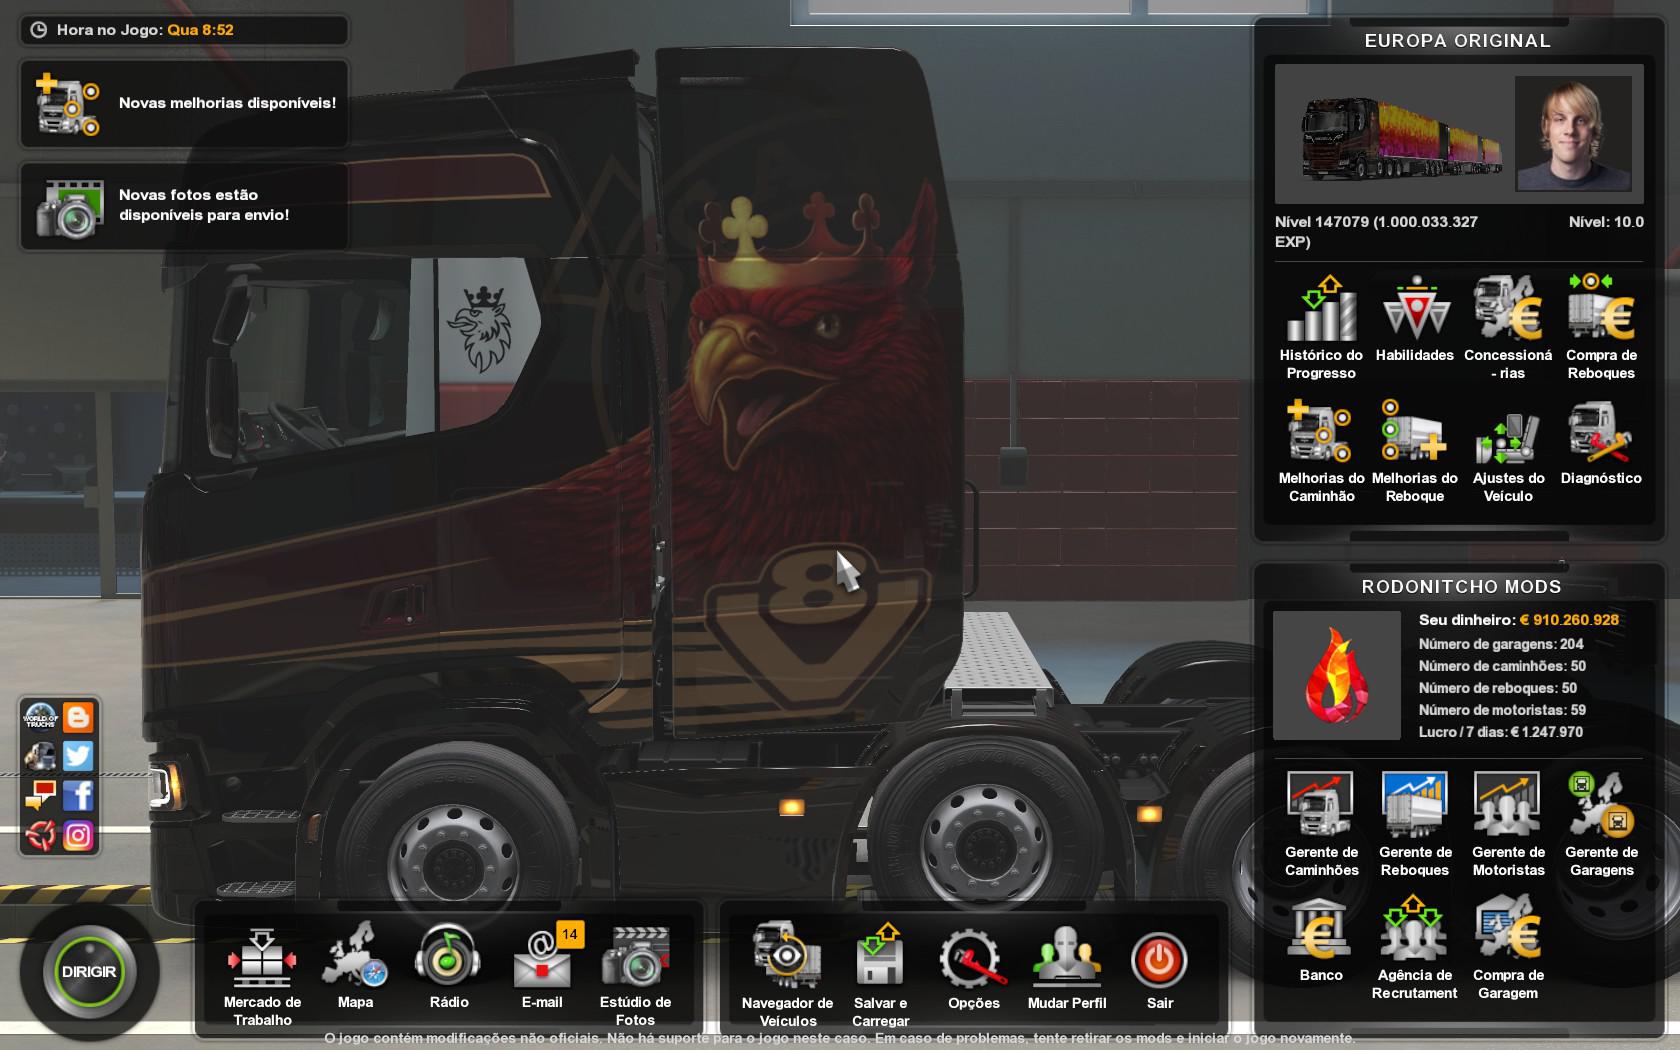 скачать моды через торрент бесплатно на игру euro truck simulator фото 97